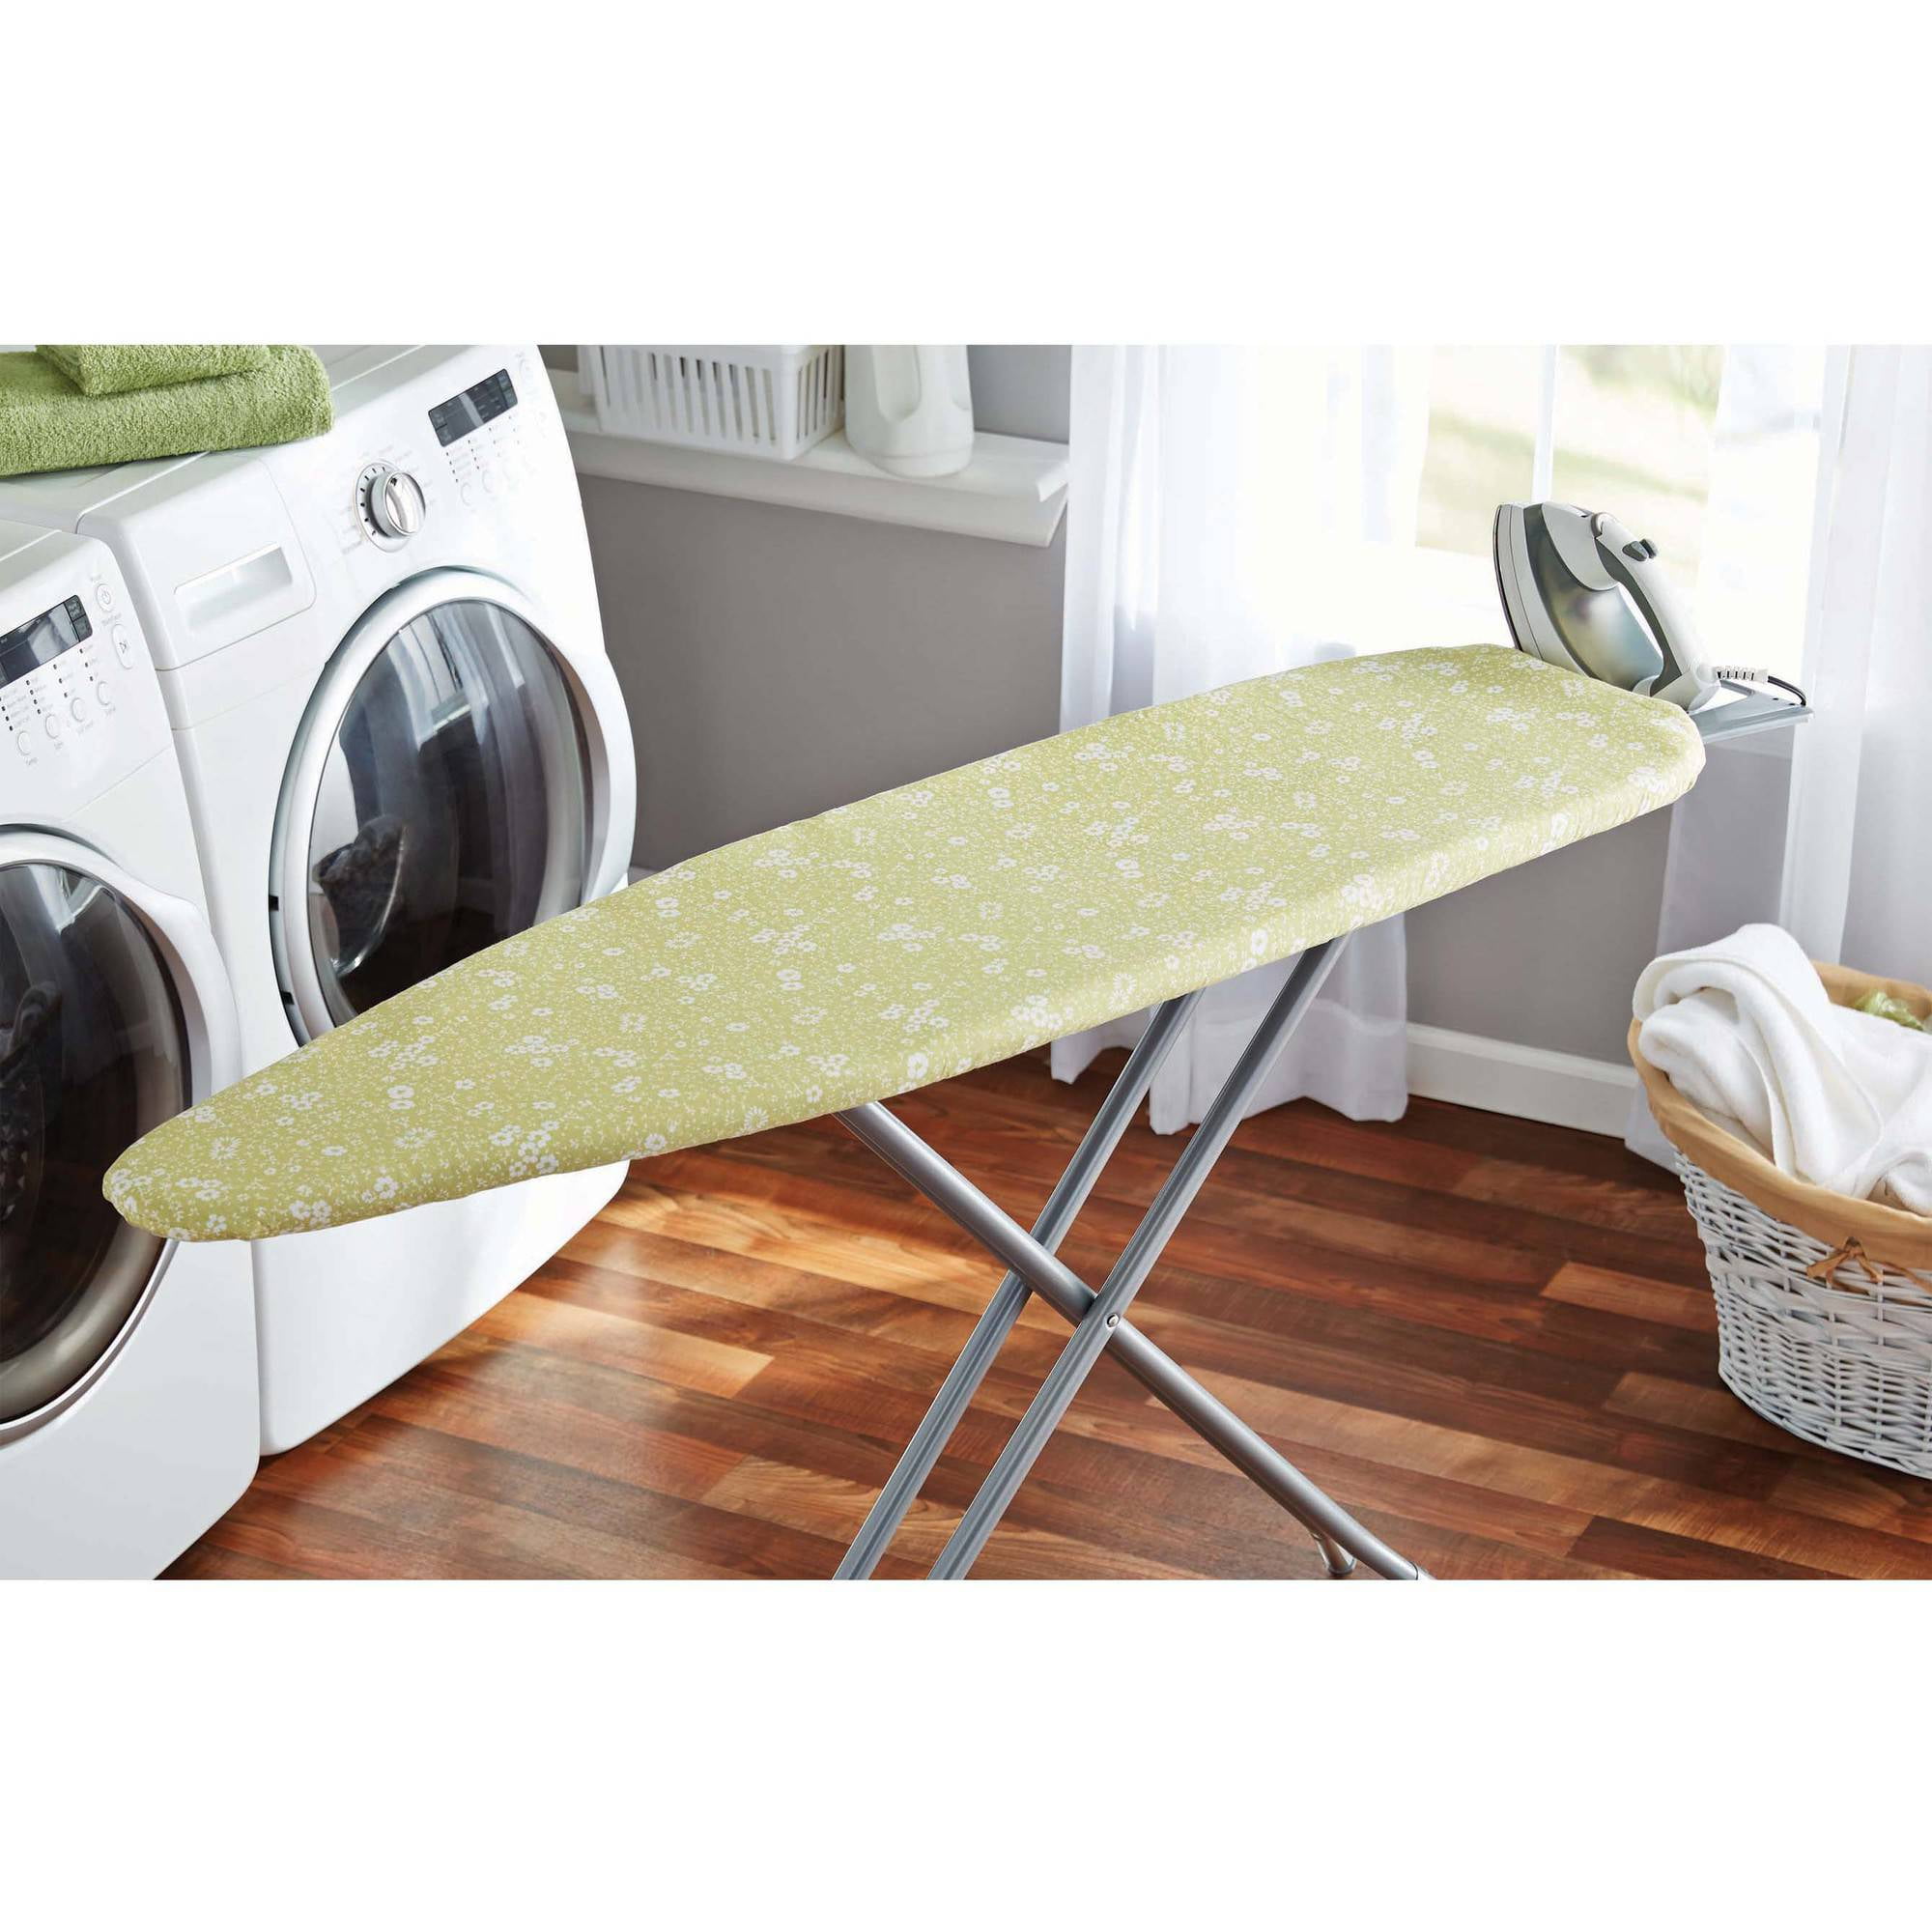 Mainstays Ironing Board Plush Pad White Standard Size 14x54 